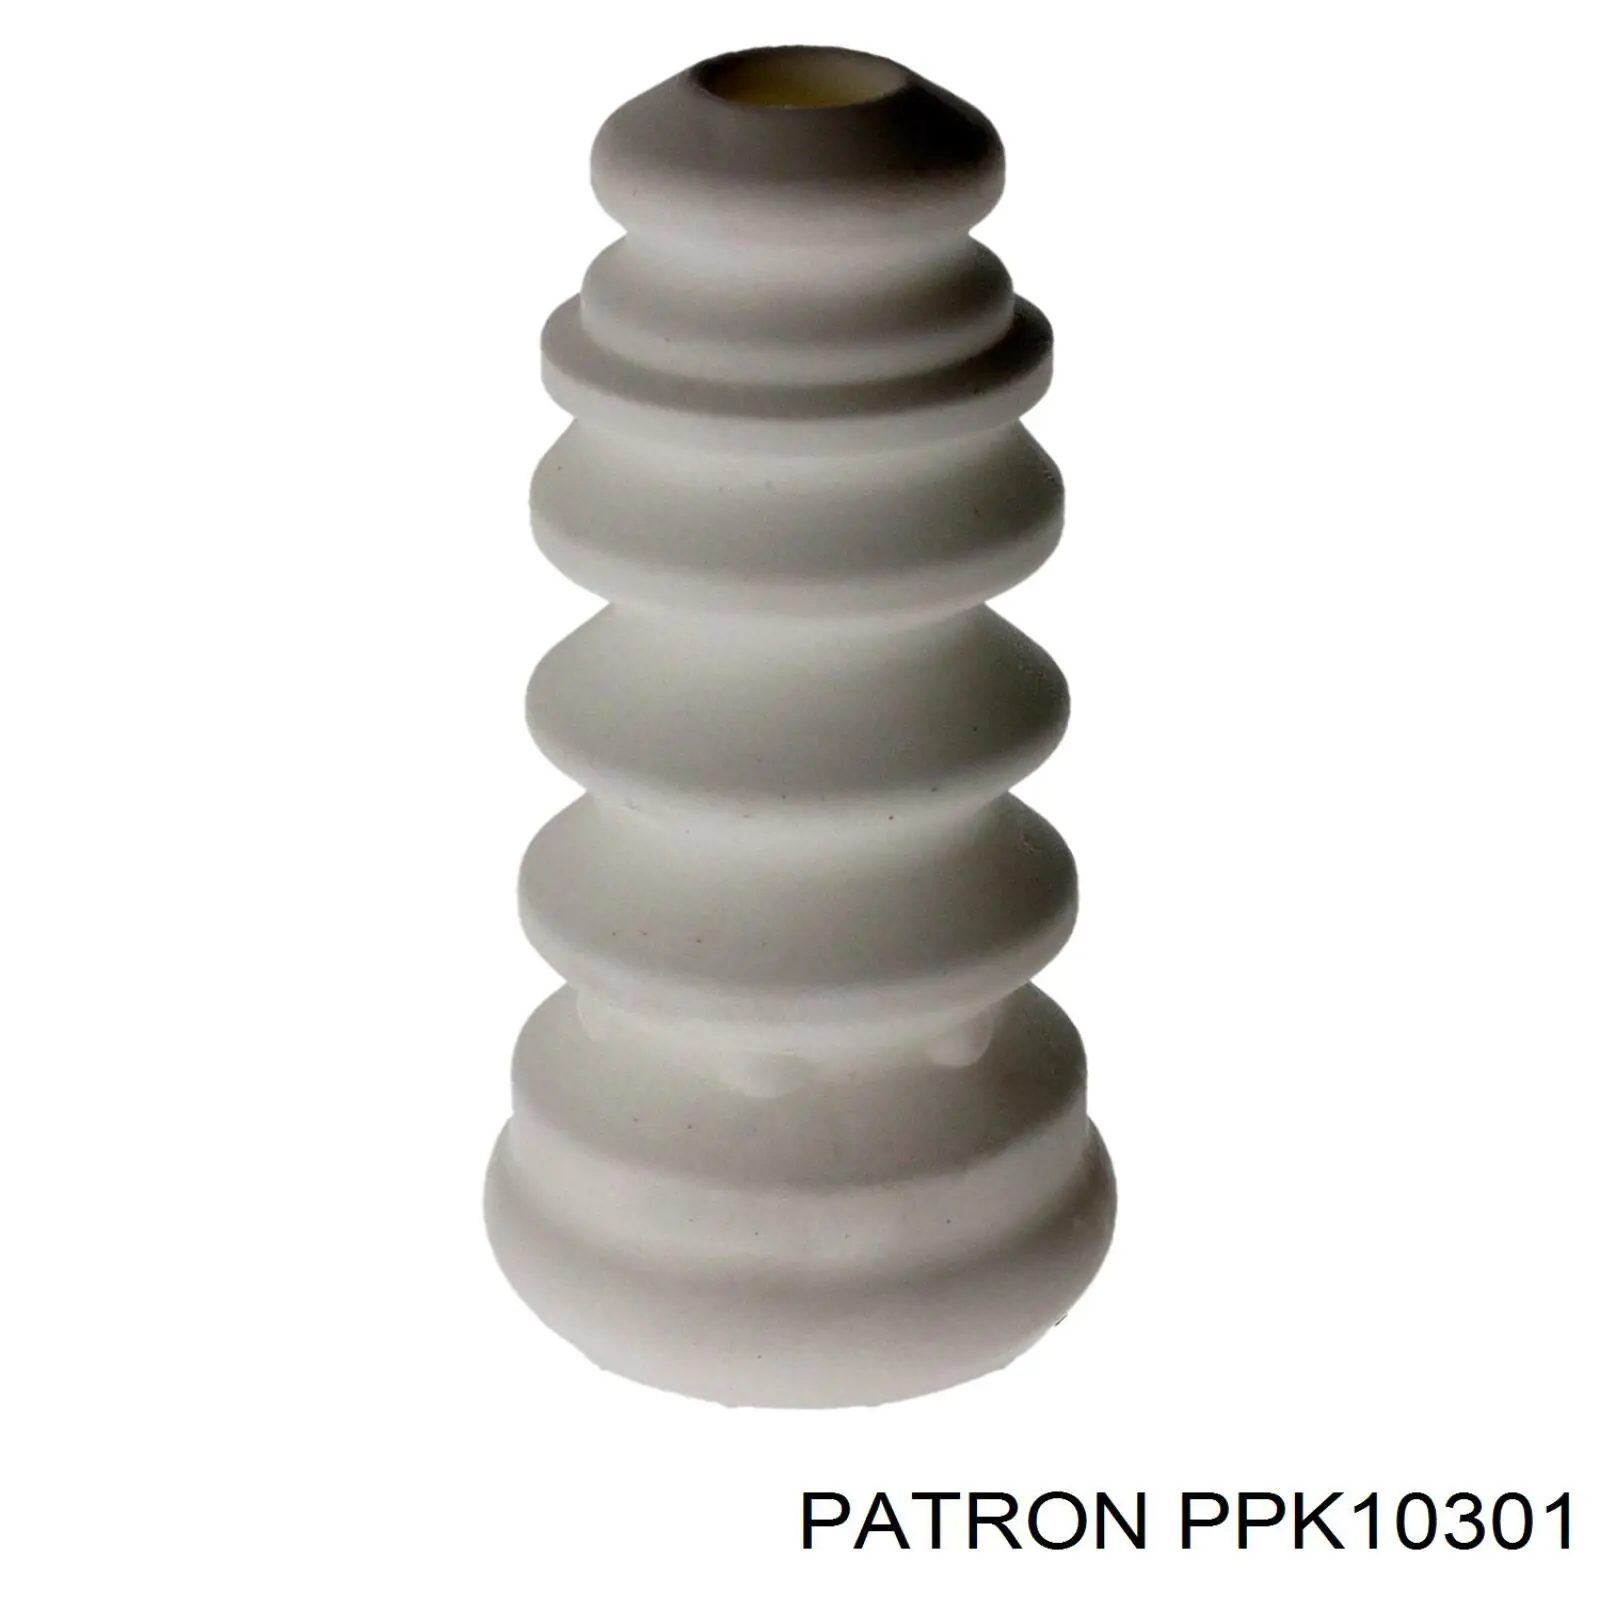 PPK10301 Patron амортизатор задний